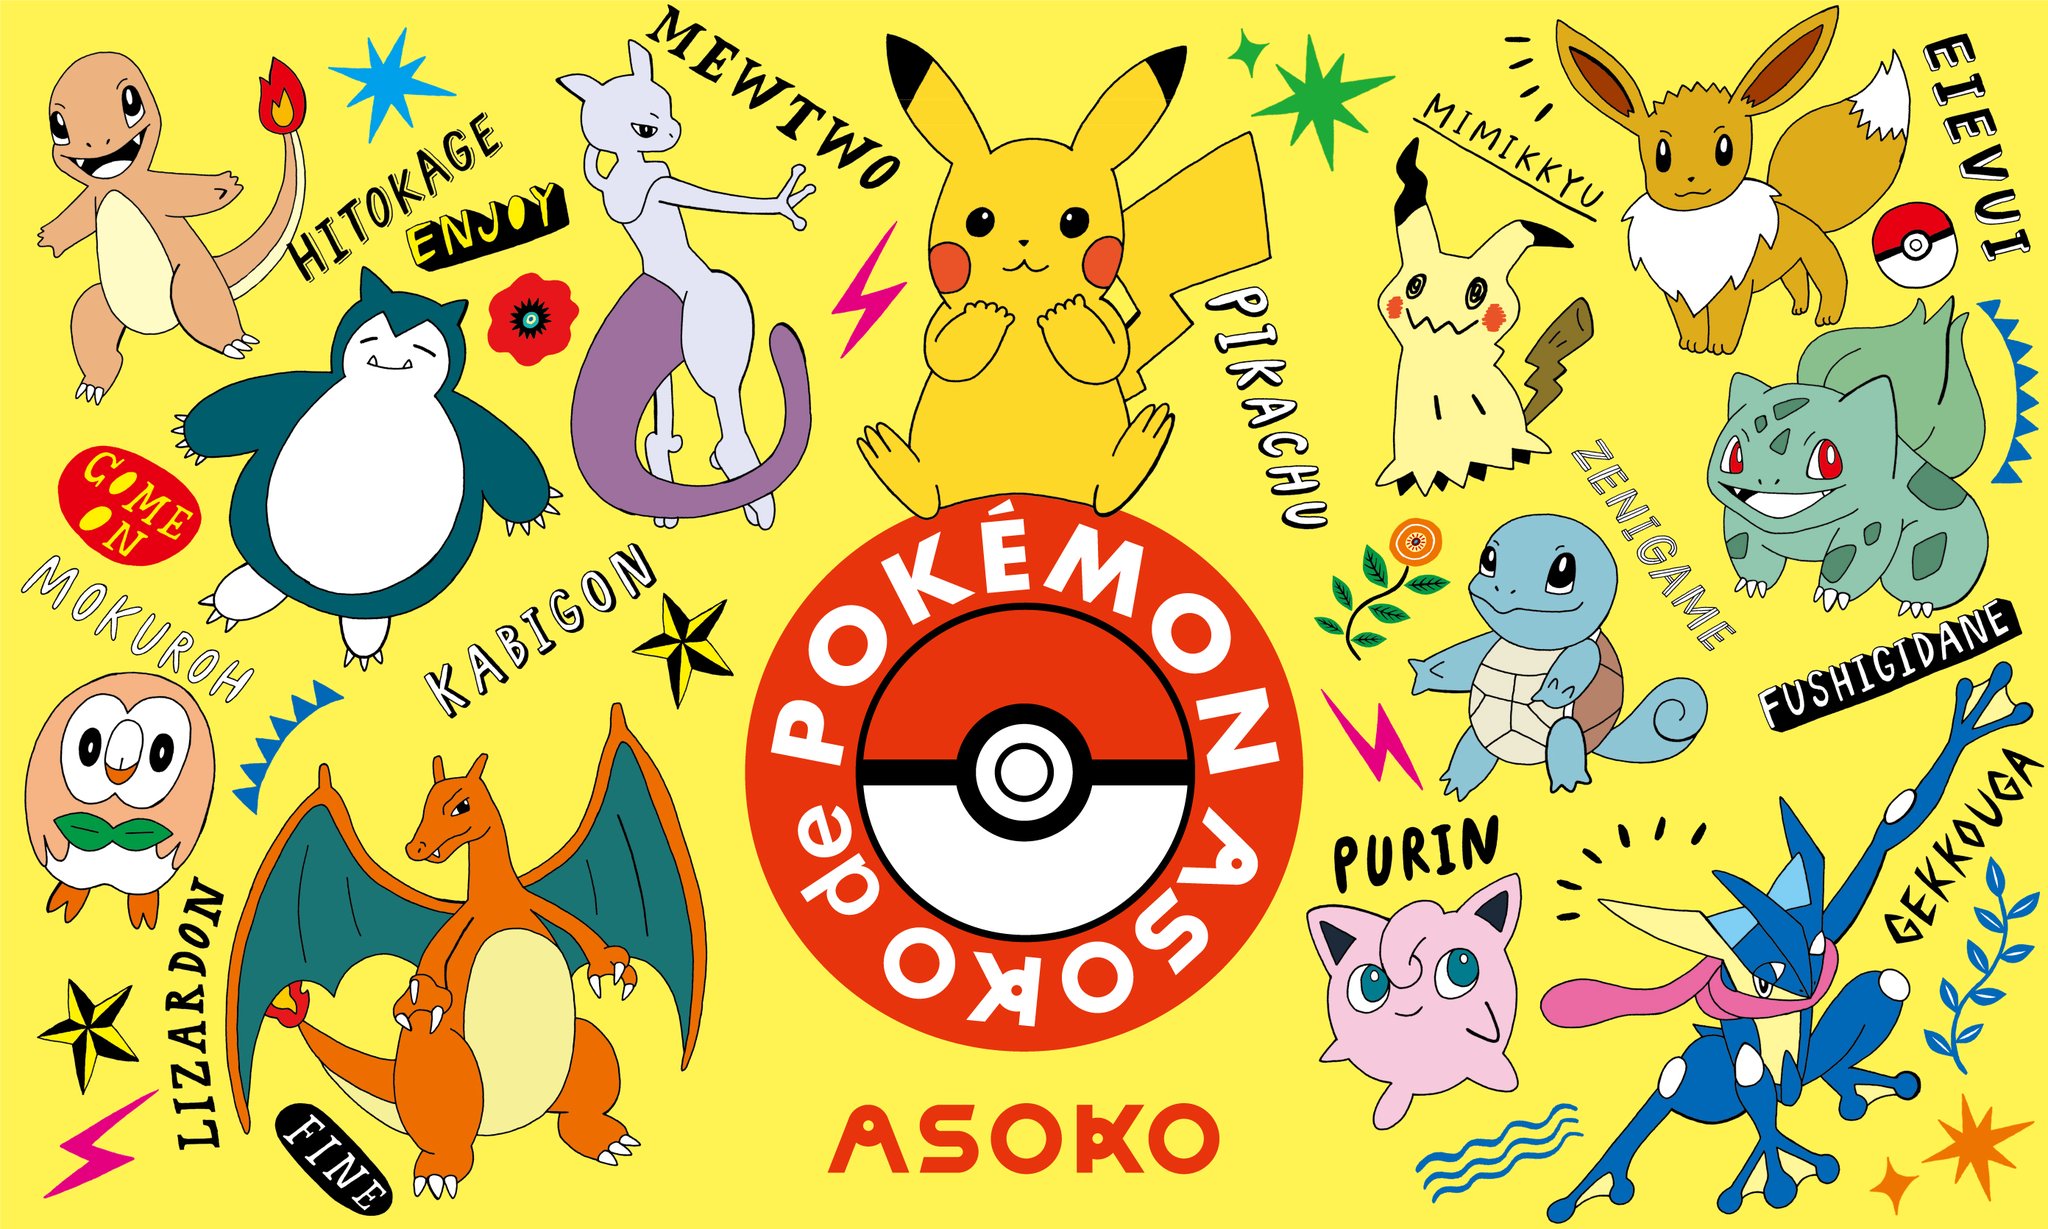 ポケモン情報局 公式 ちょっとゆるい ポケモン たちが描かれた キュートな雑貨 Asoko De Pokemon なんとグッズは84種類もあるみたいです Asoko T Co 4kmpkxj9nt